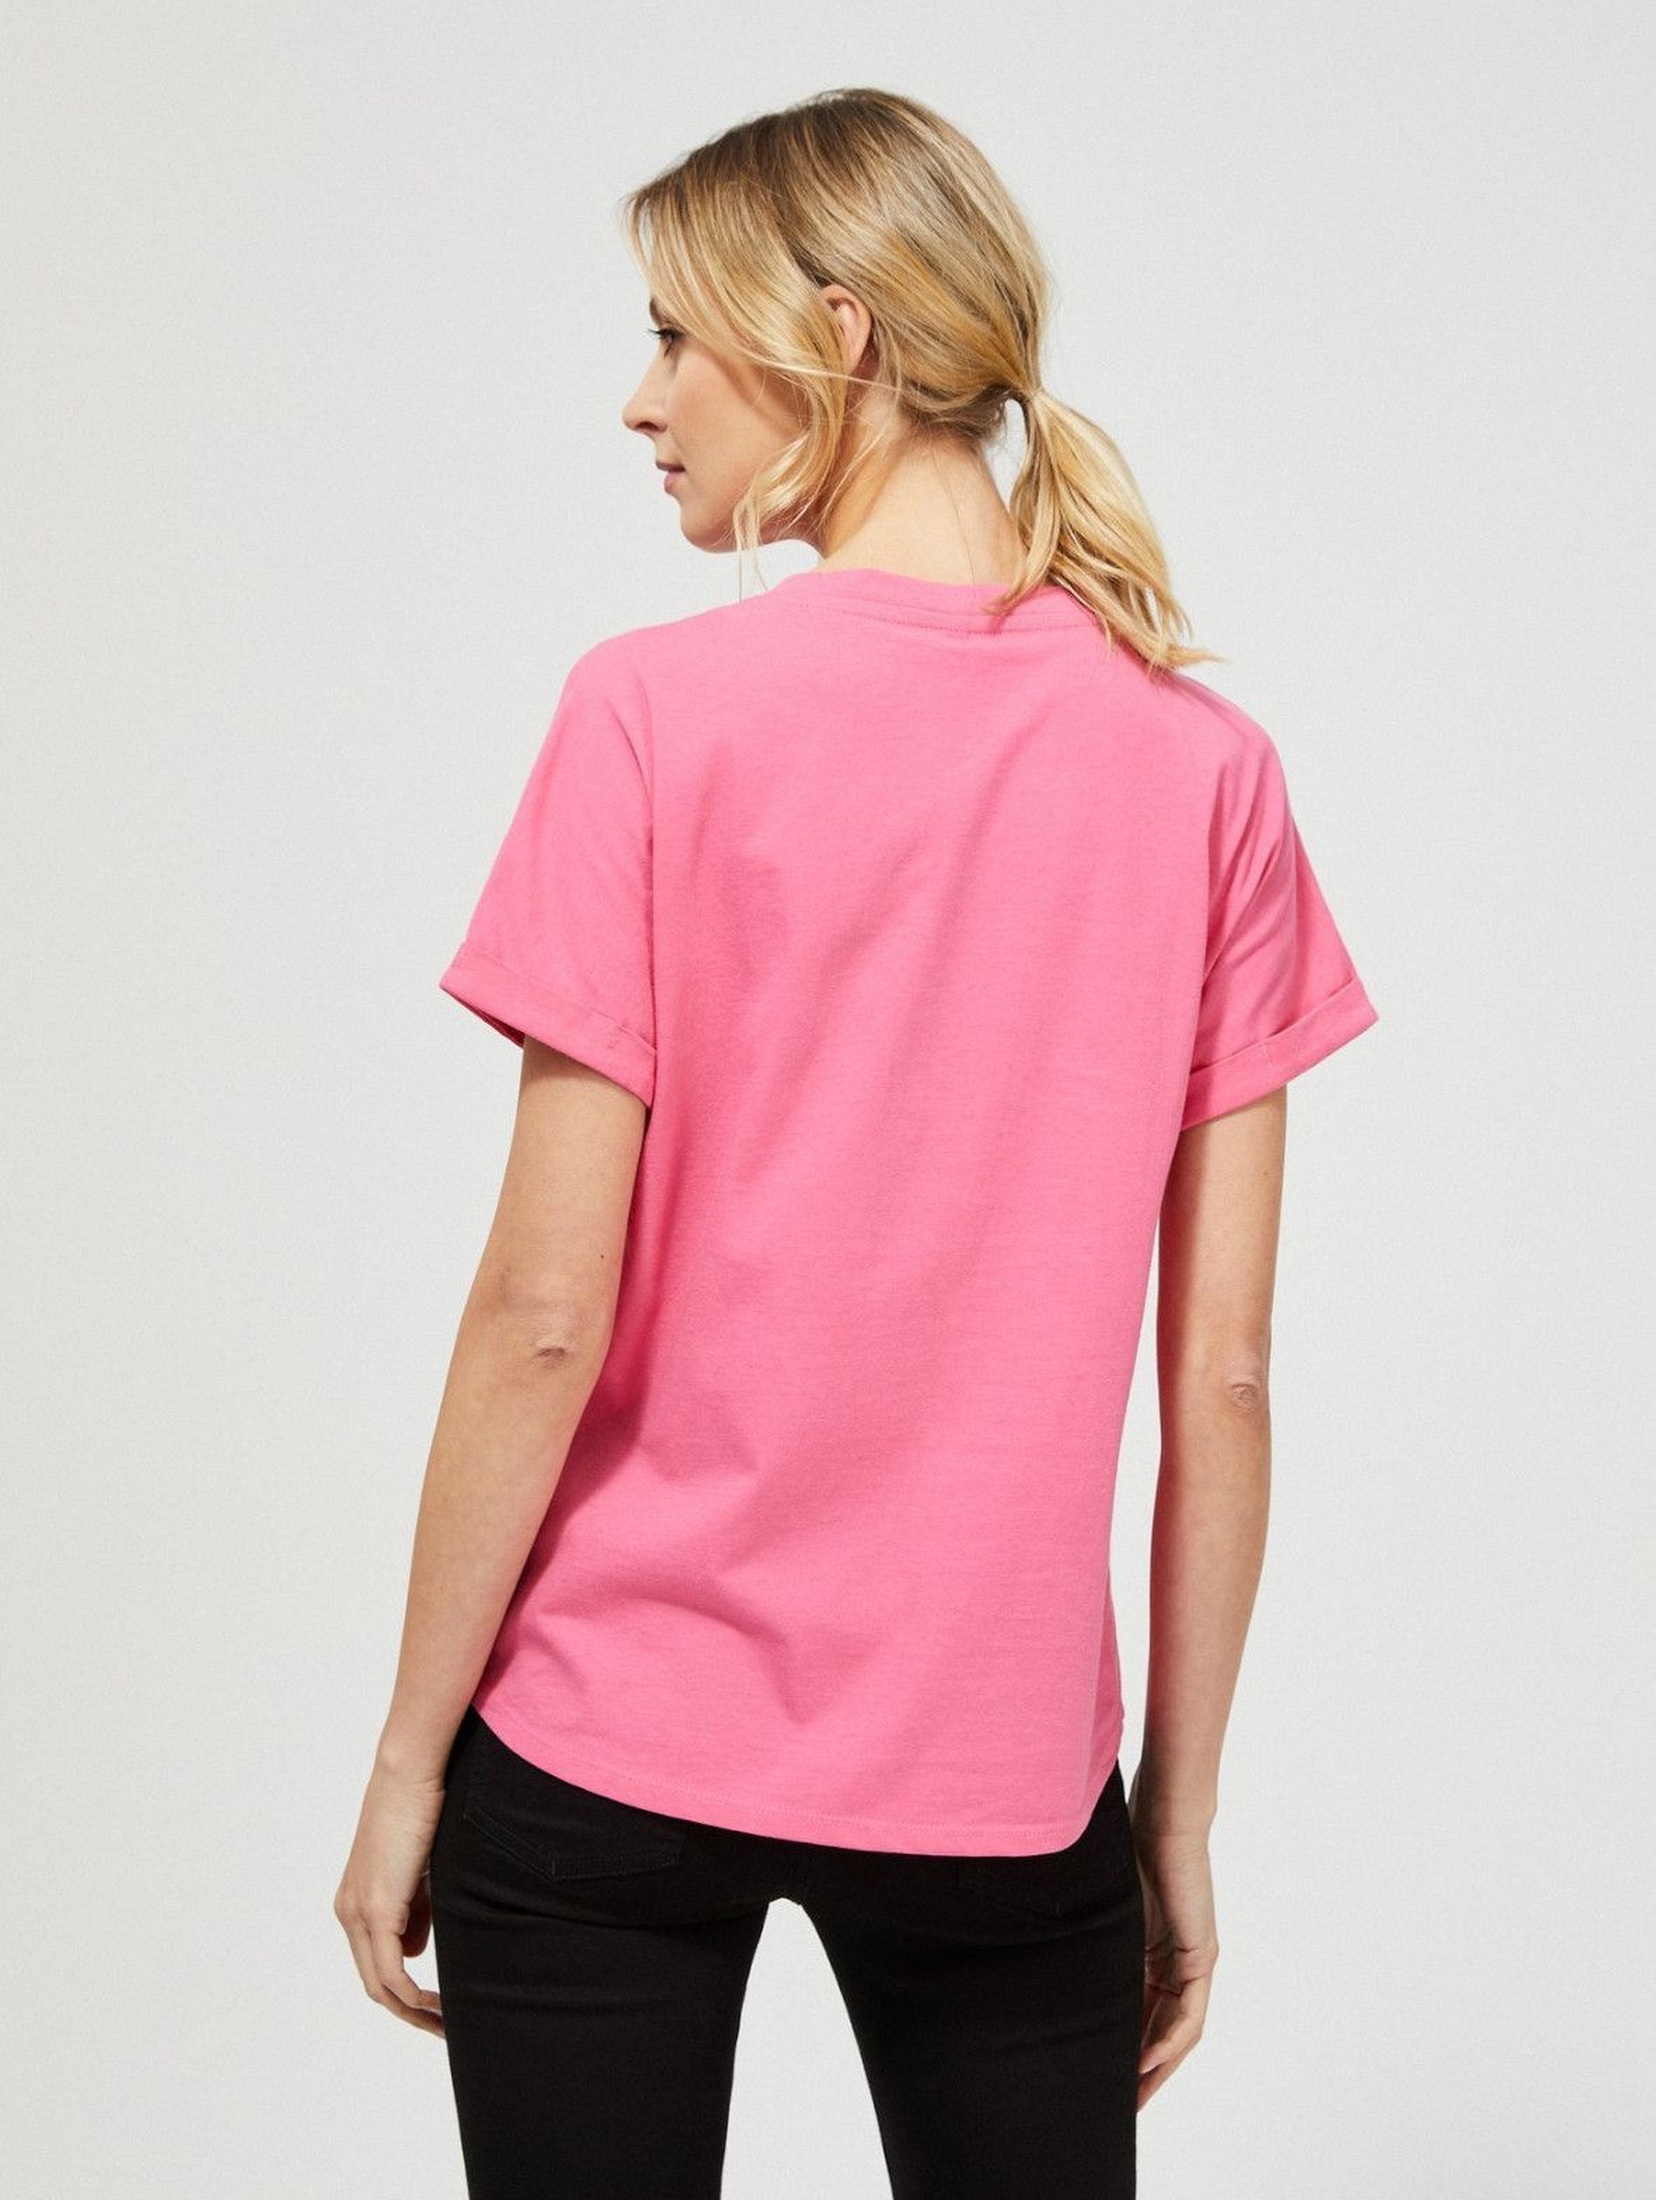 Bawełniany różowy T-shirt damski na krótki rękaw z napisami